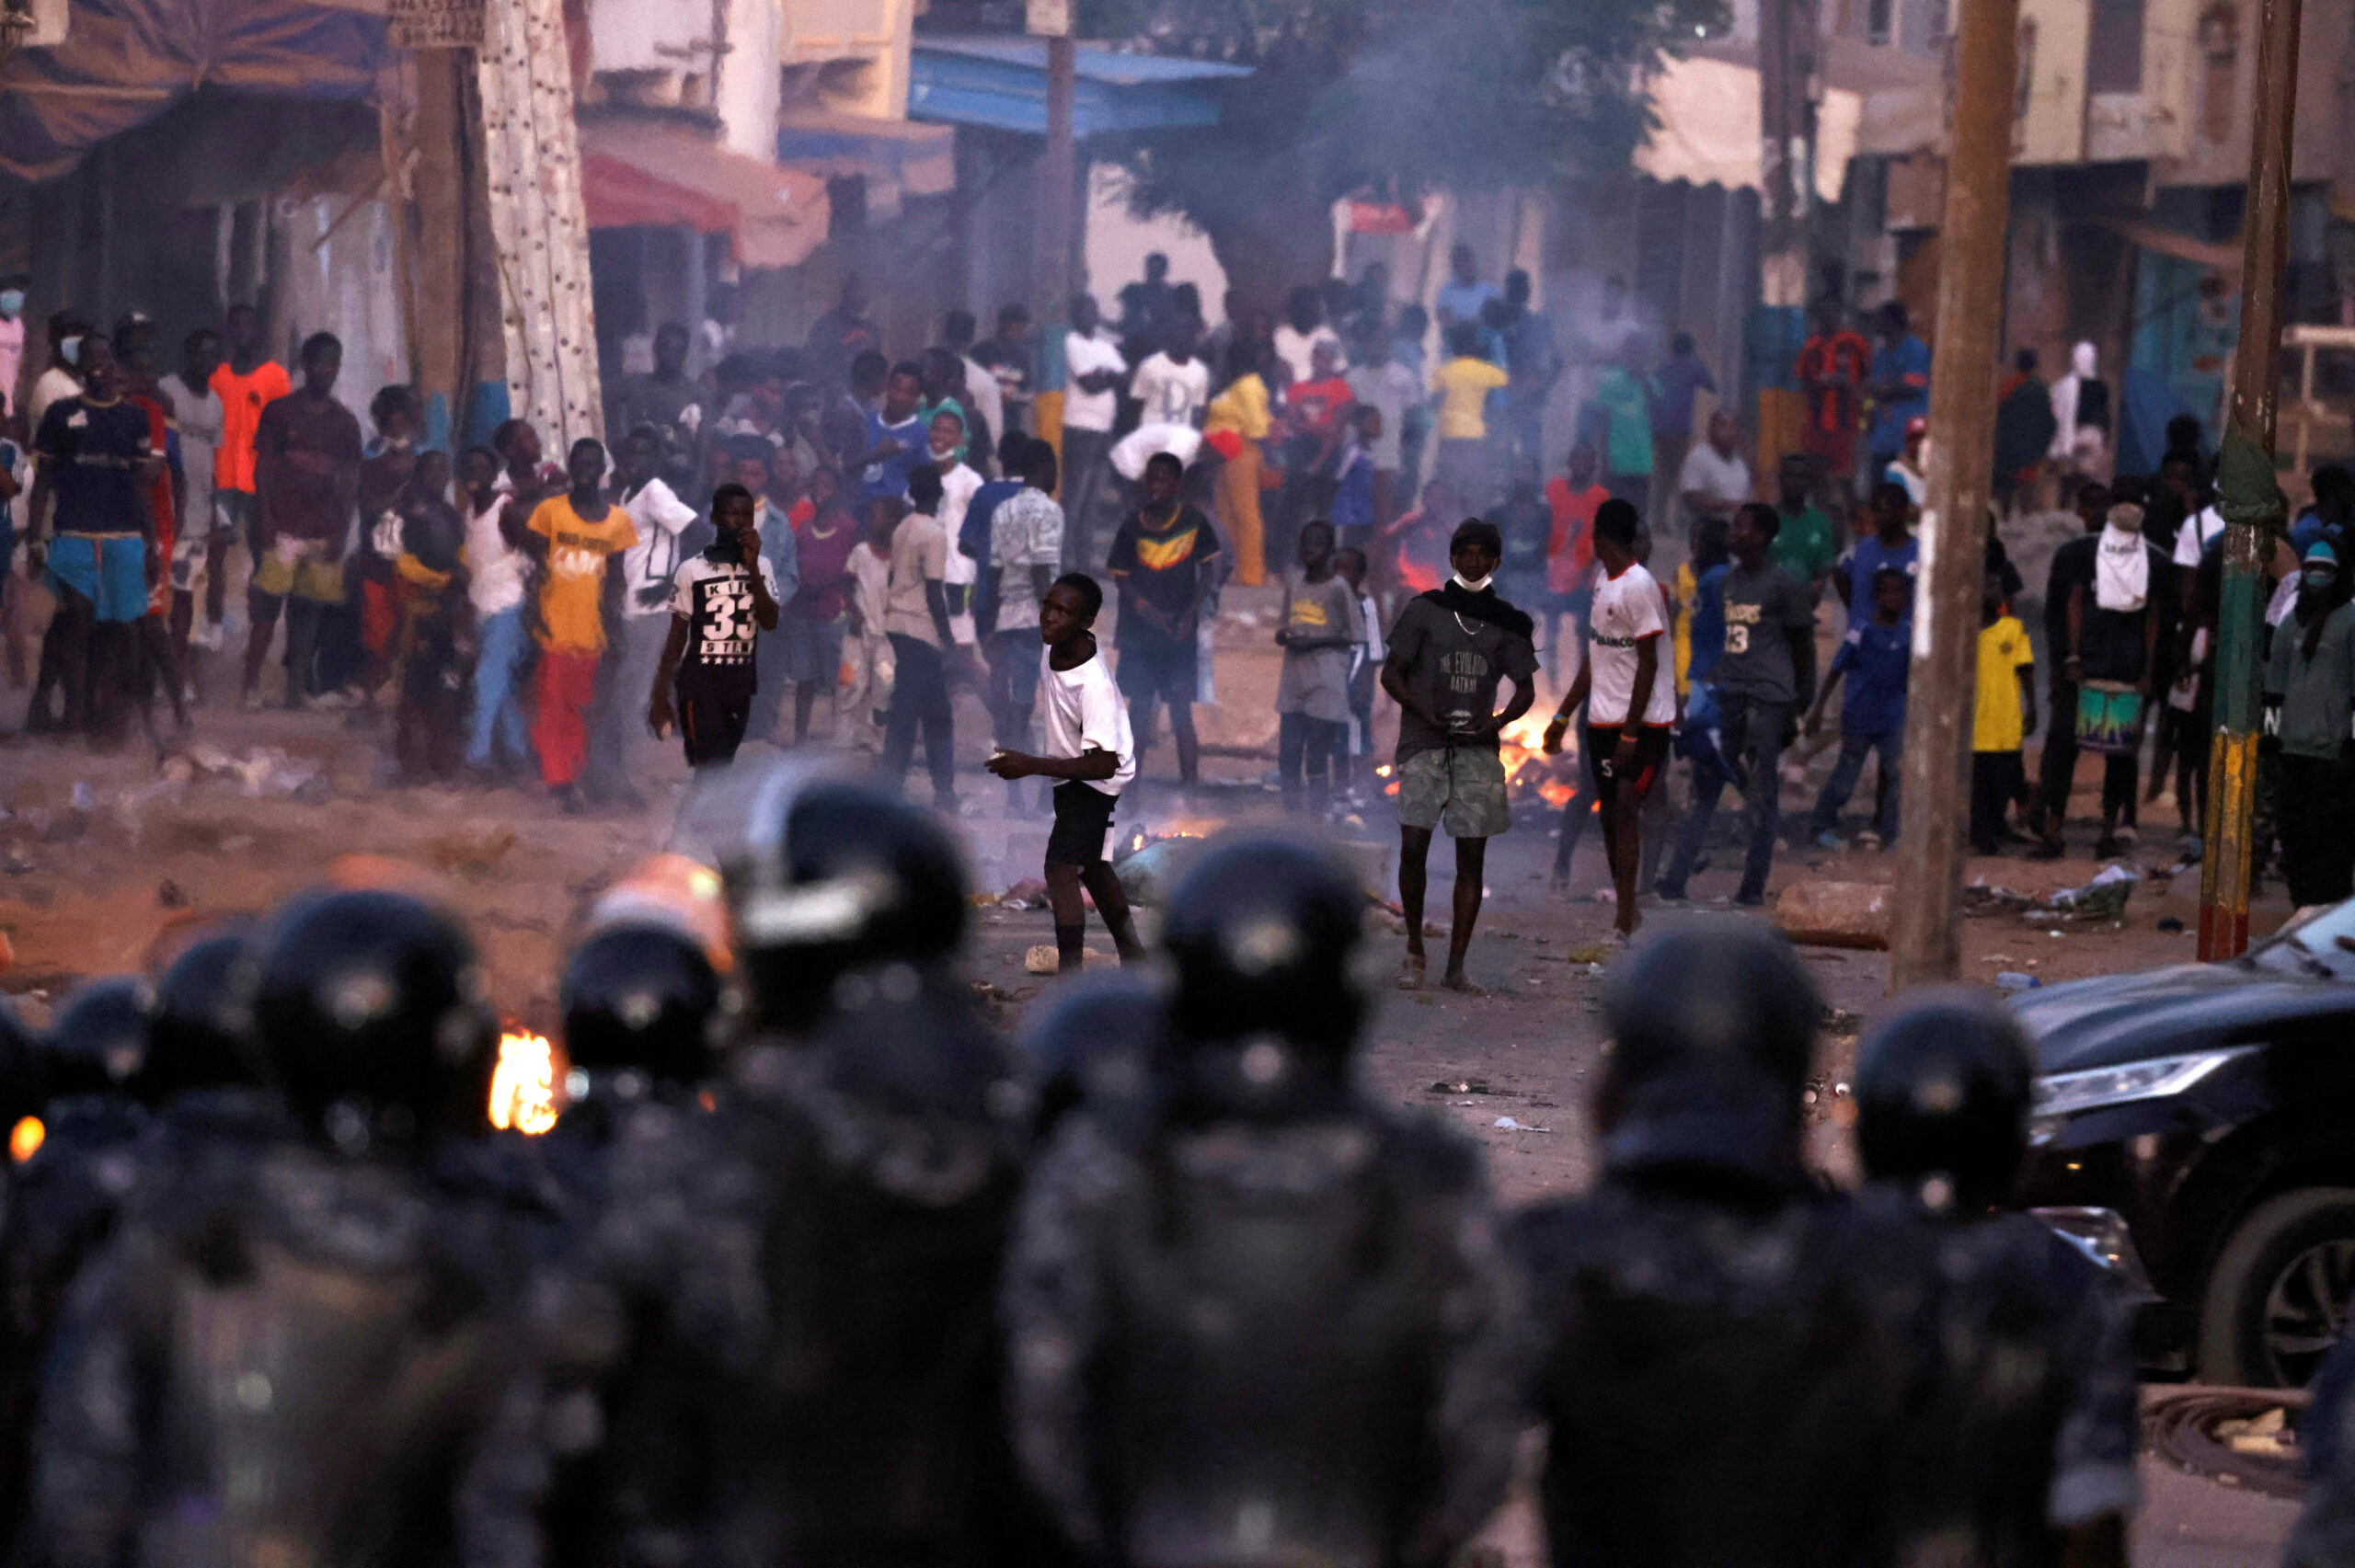 Sénégal: Inquiétudes face à la répression meurtrière, à la violence et aux restrictions de l’accès à l’internet - Civic Space